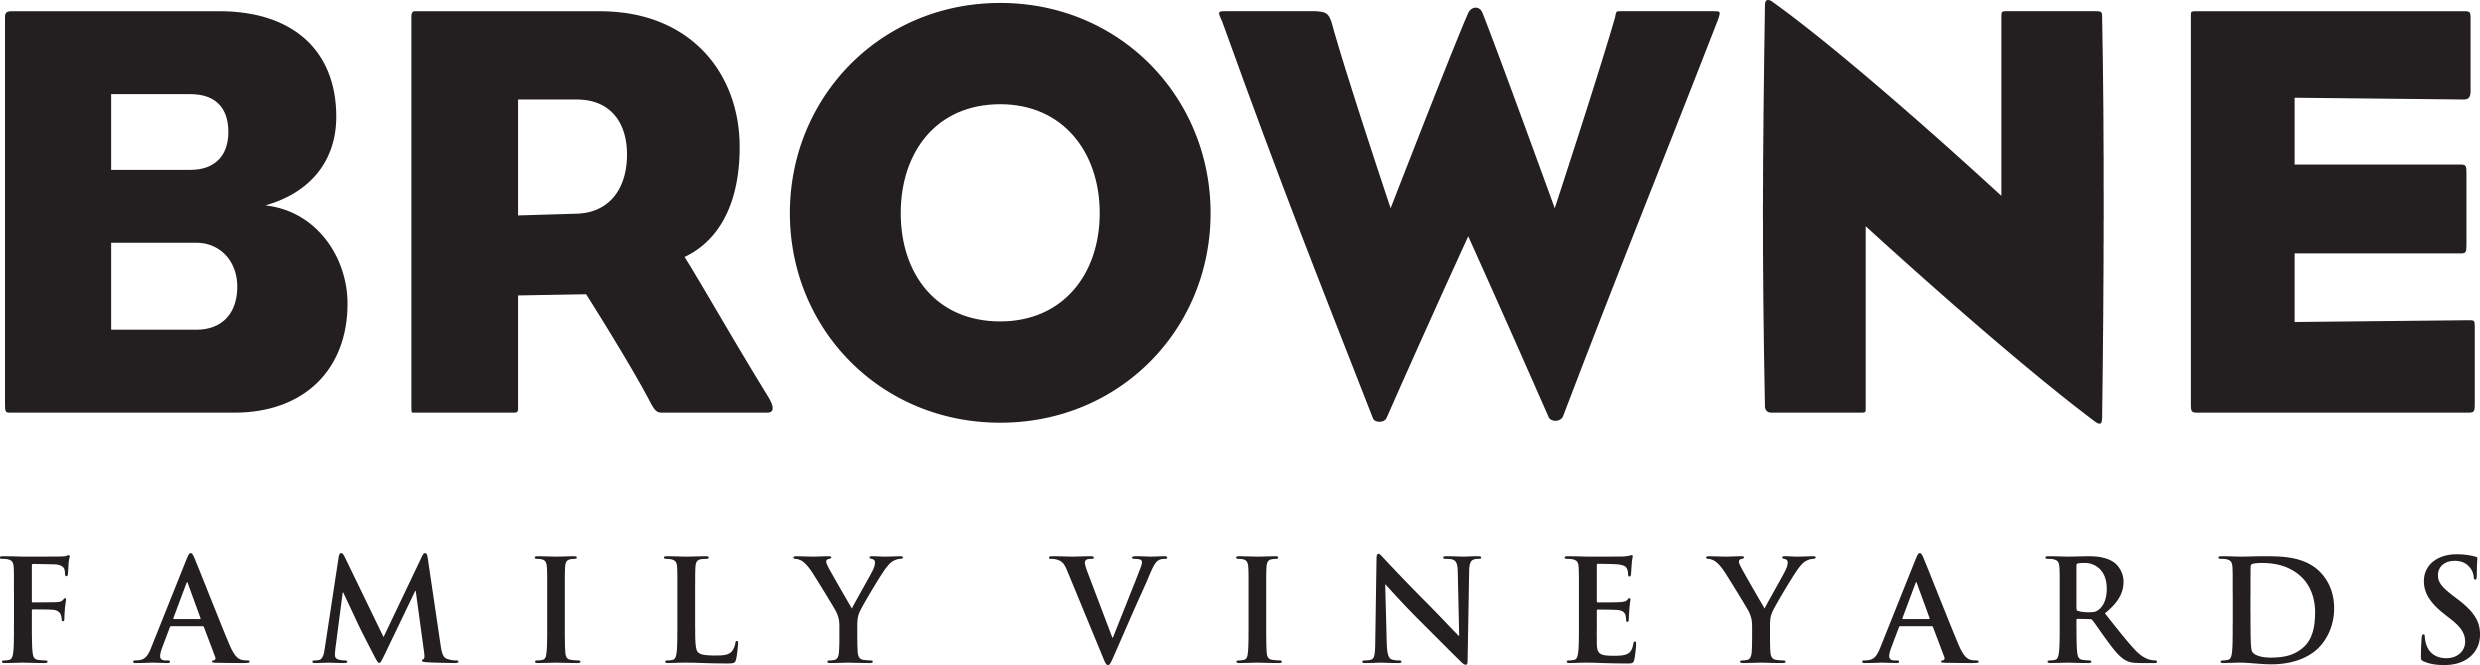 Browne Family Vineyards (Precept) logo